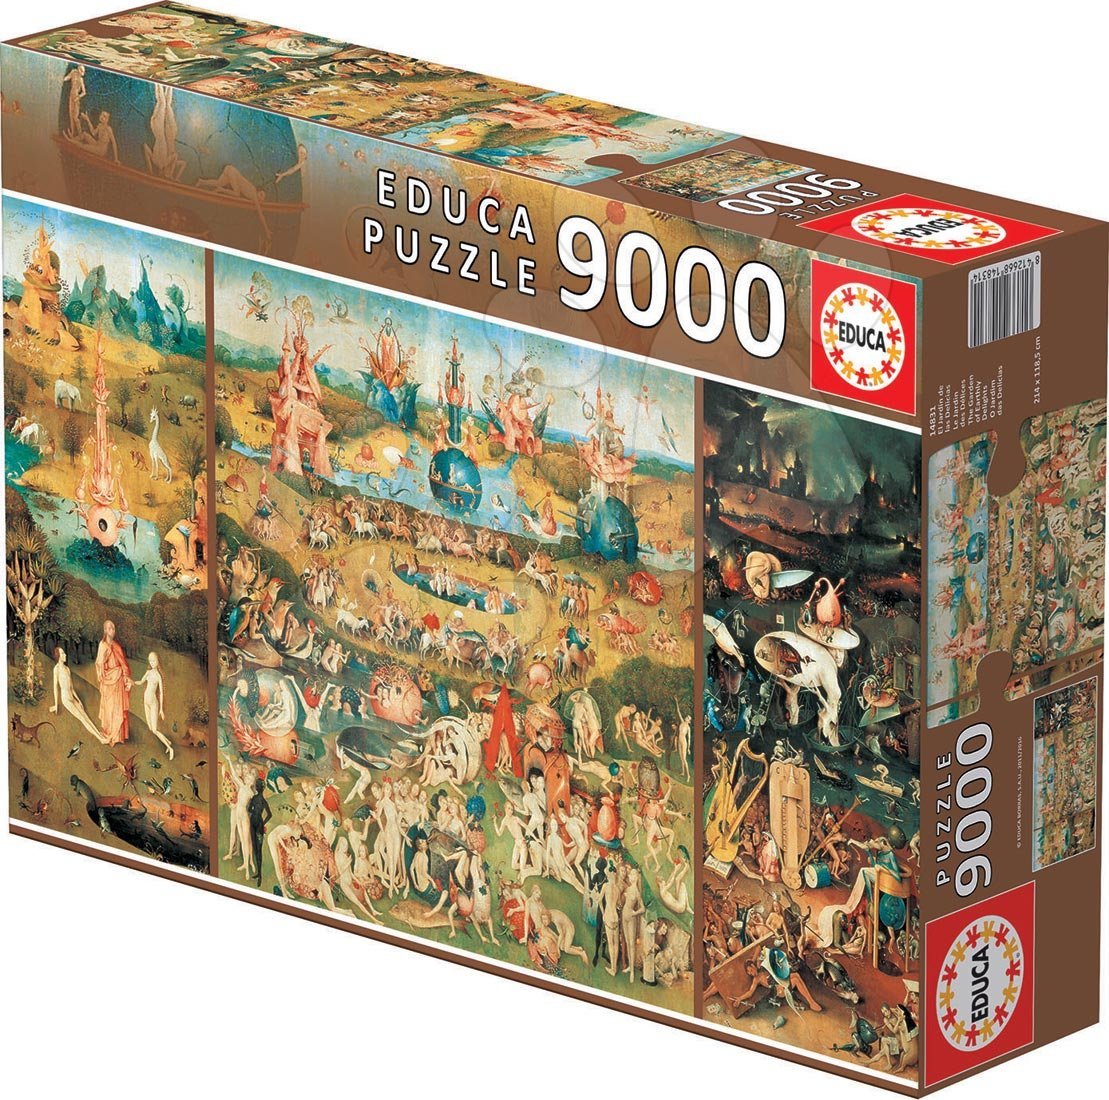 Puzzle 9000 - 42 000 dílků